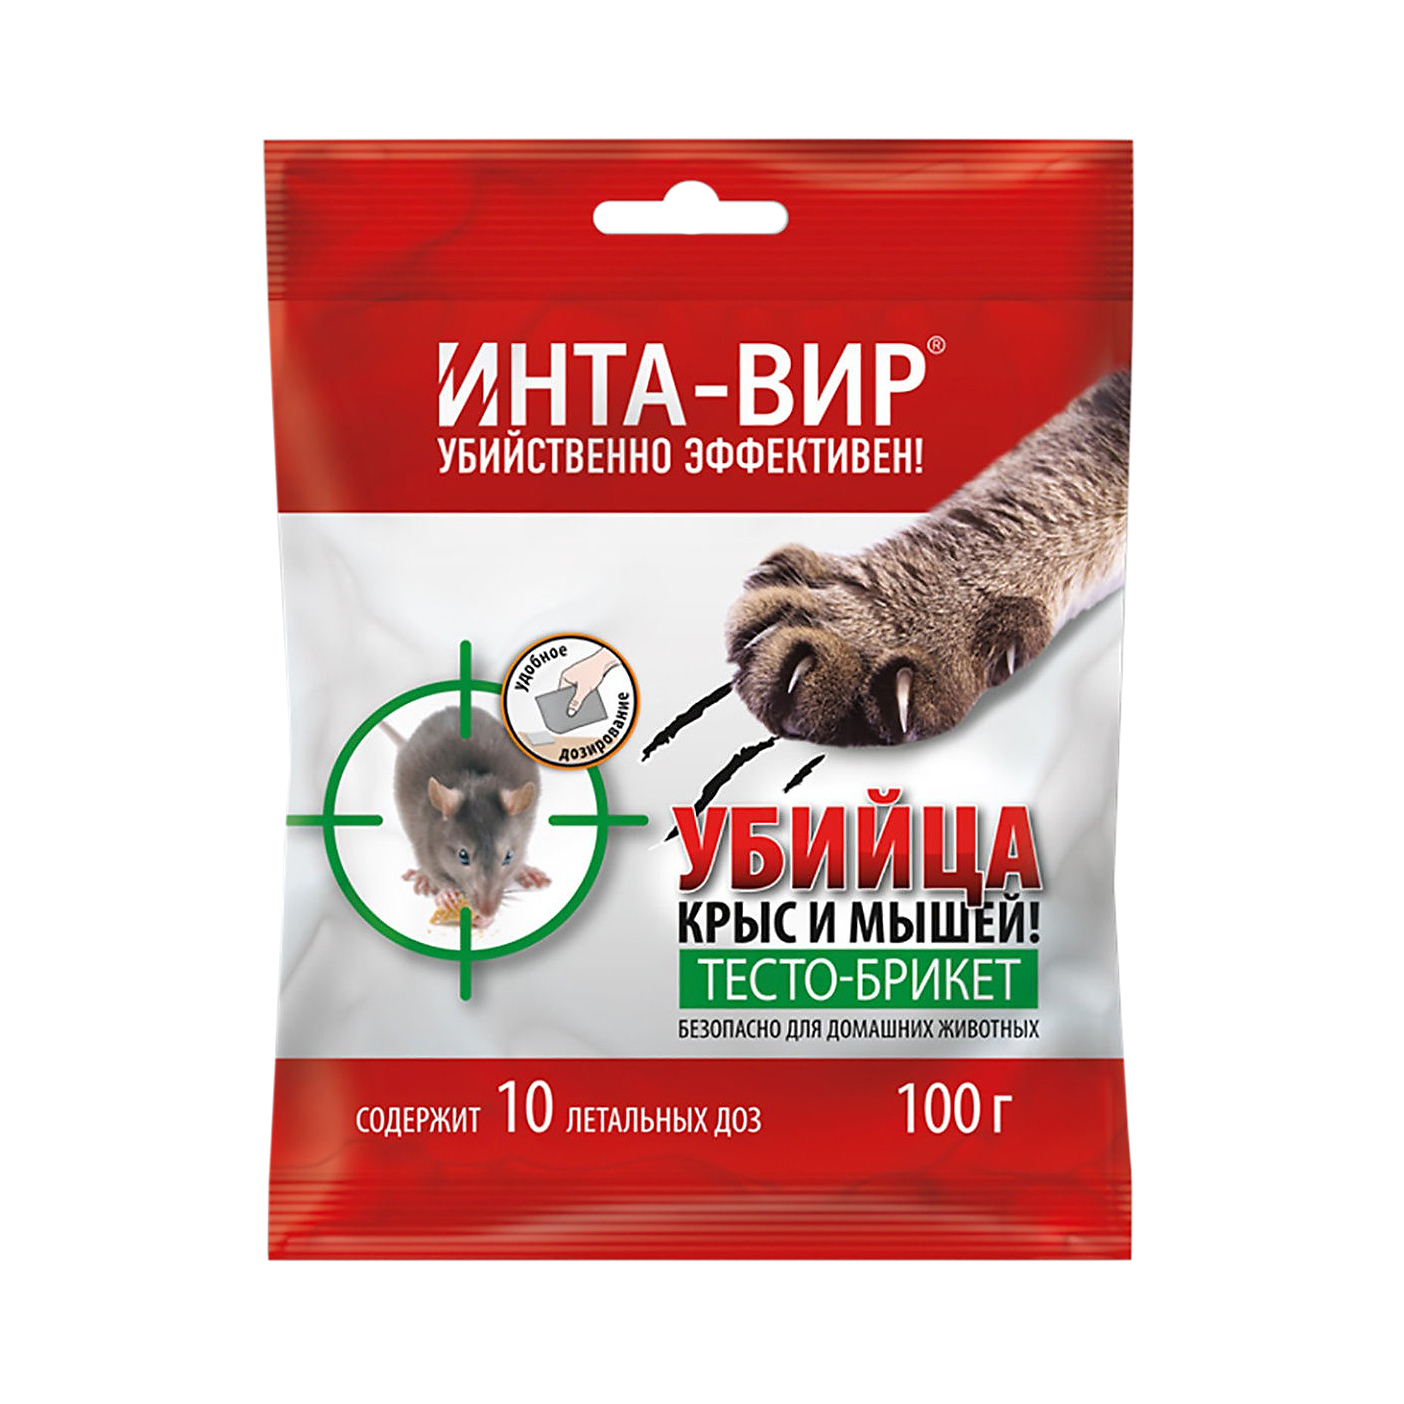 Родентицид Super CАТ Б 100 г средство защиты от крыс и мышей инта вир зерно в банке